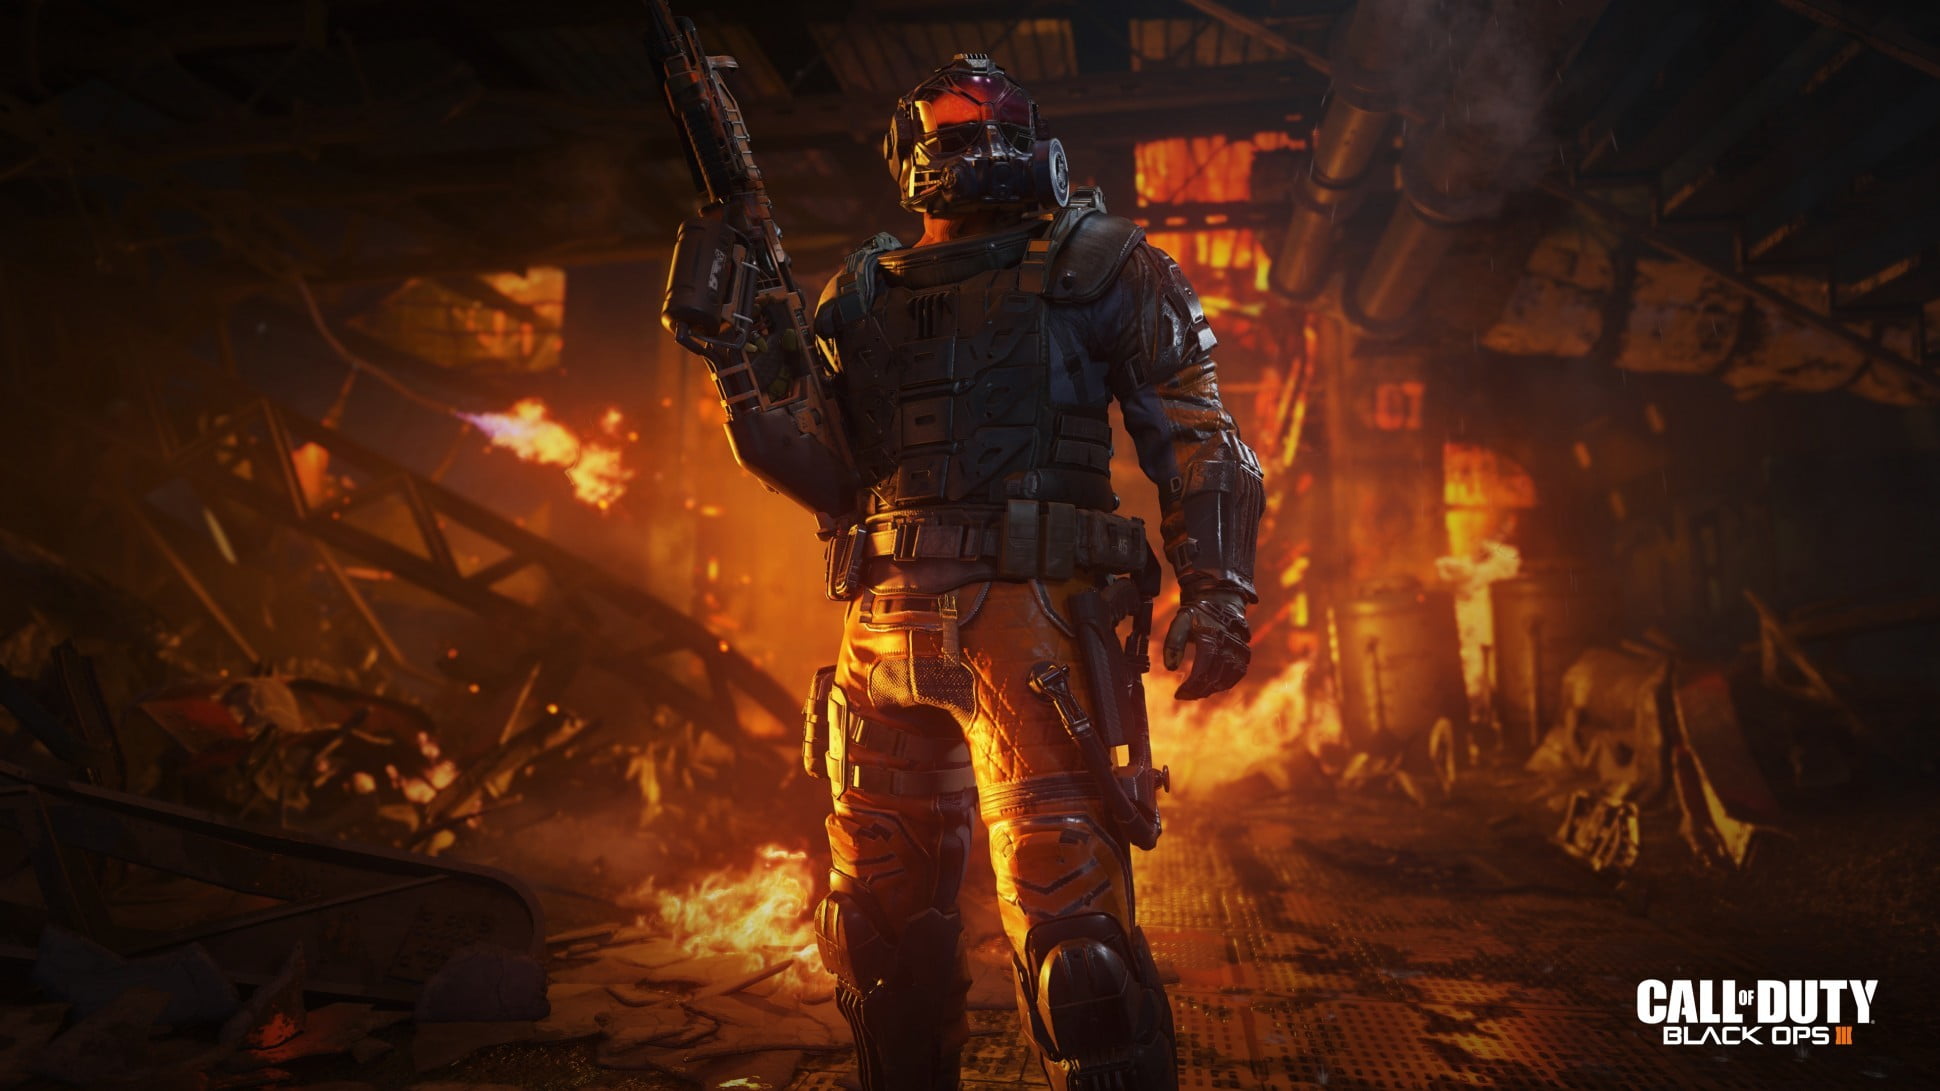 Call of Duty Black Ops digital wallpaper, Black Ops 3, Black Ops 3 Spezialisten